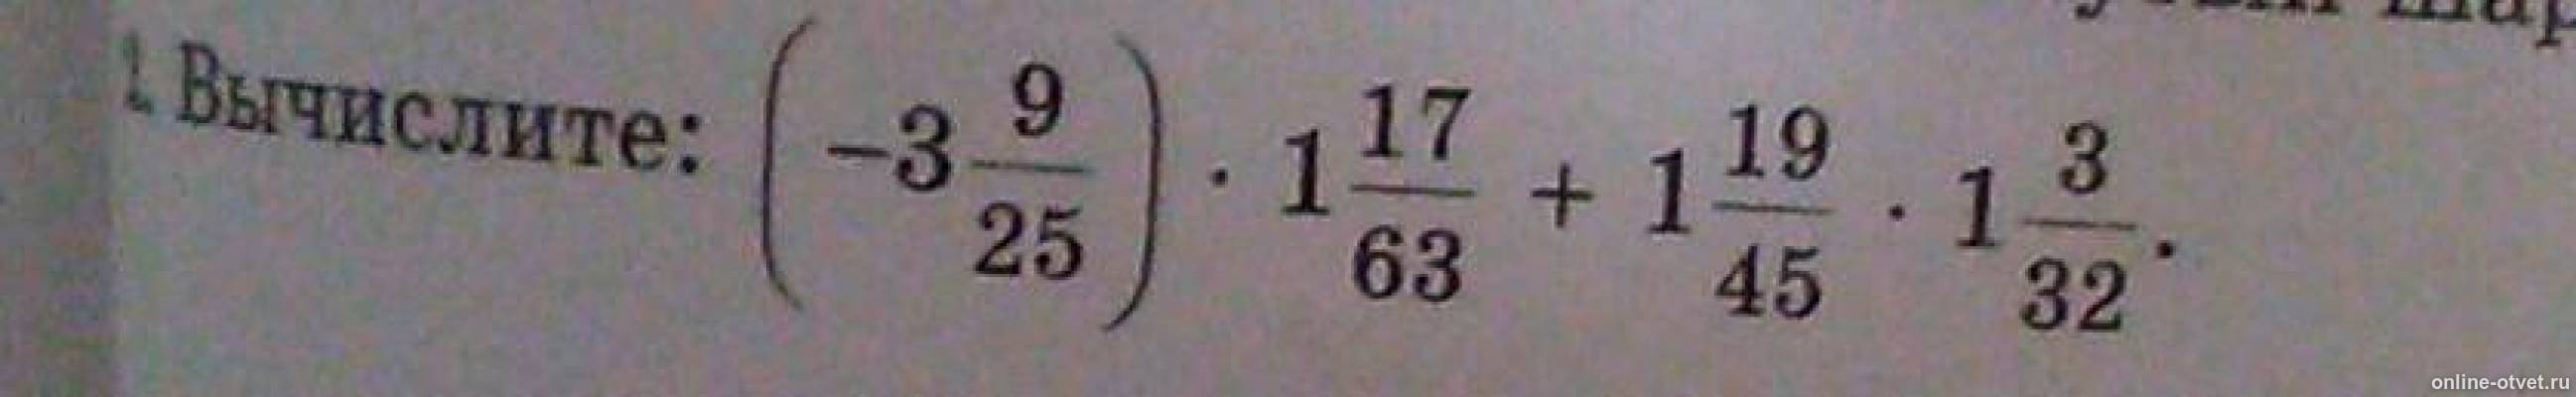 Вычислите 11 5 32 3. Вычислить a 3 8. Вычислите 3.3. Вычислите 3 2/3+1/9 -2.25. 3 11 15 17 11 34 Вычислите.